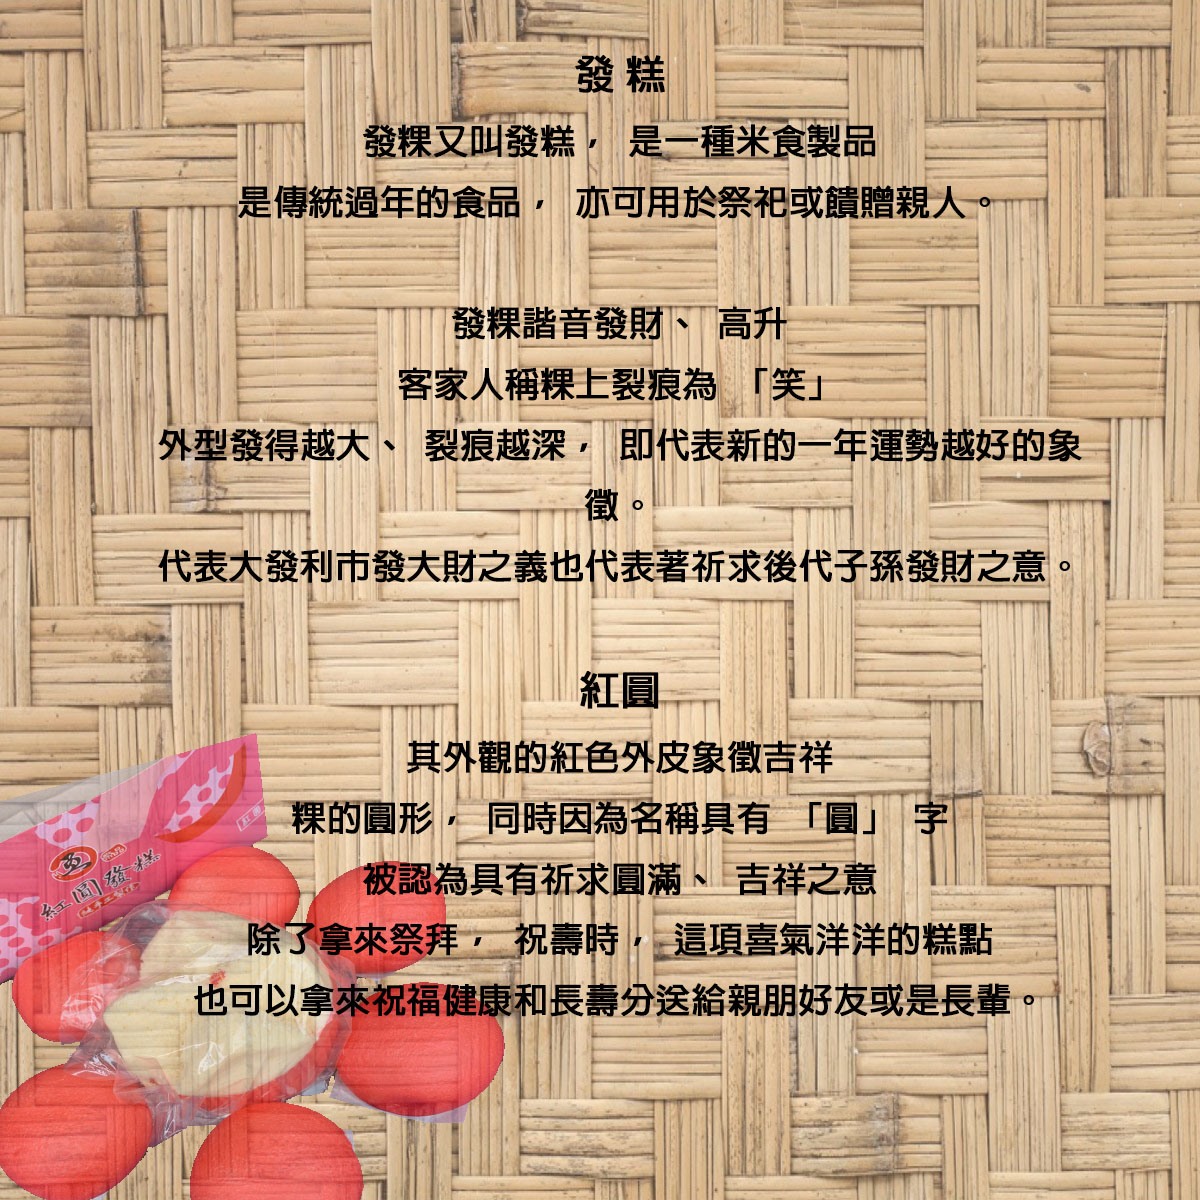 法事祭品-尾日飽福葷六飯菜全組含已煮八珍湯藥壺(葷)